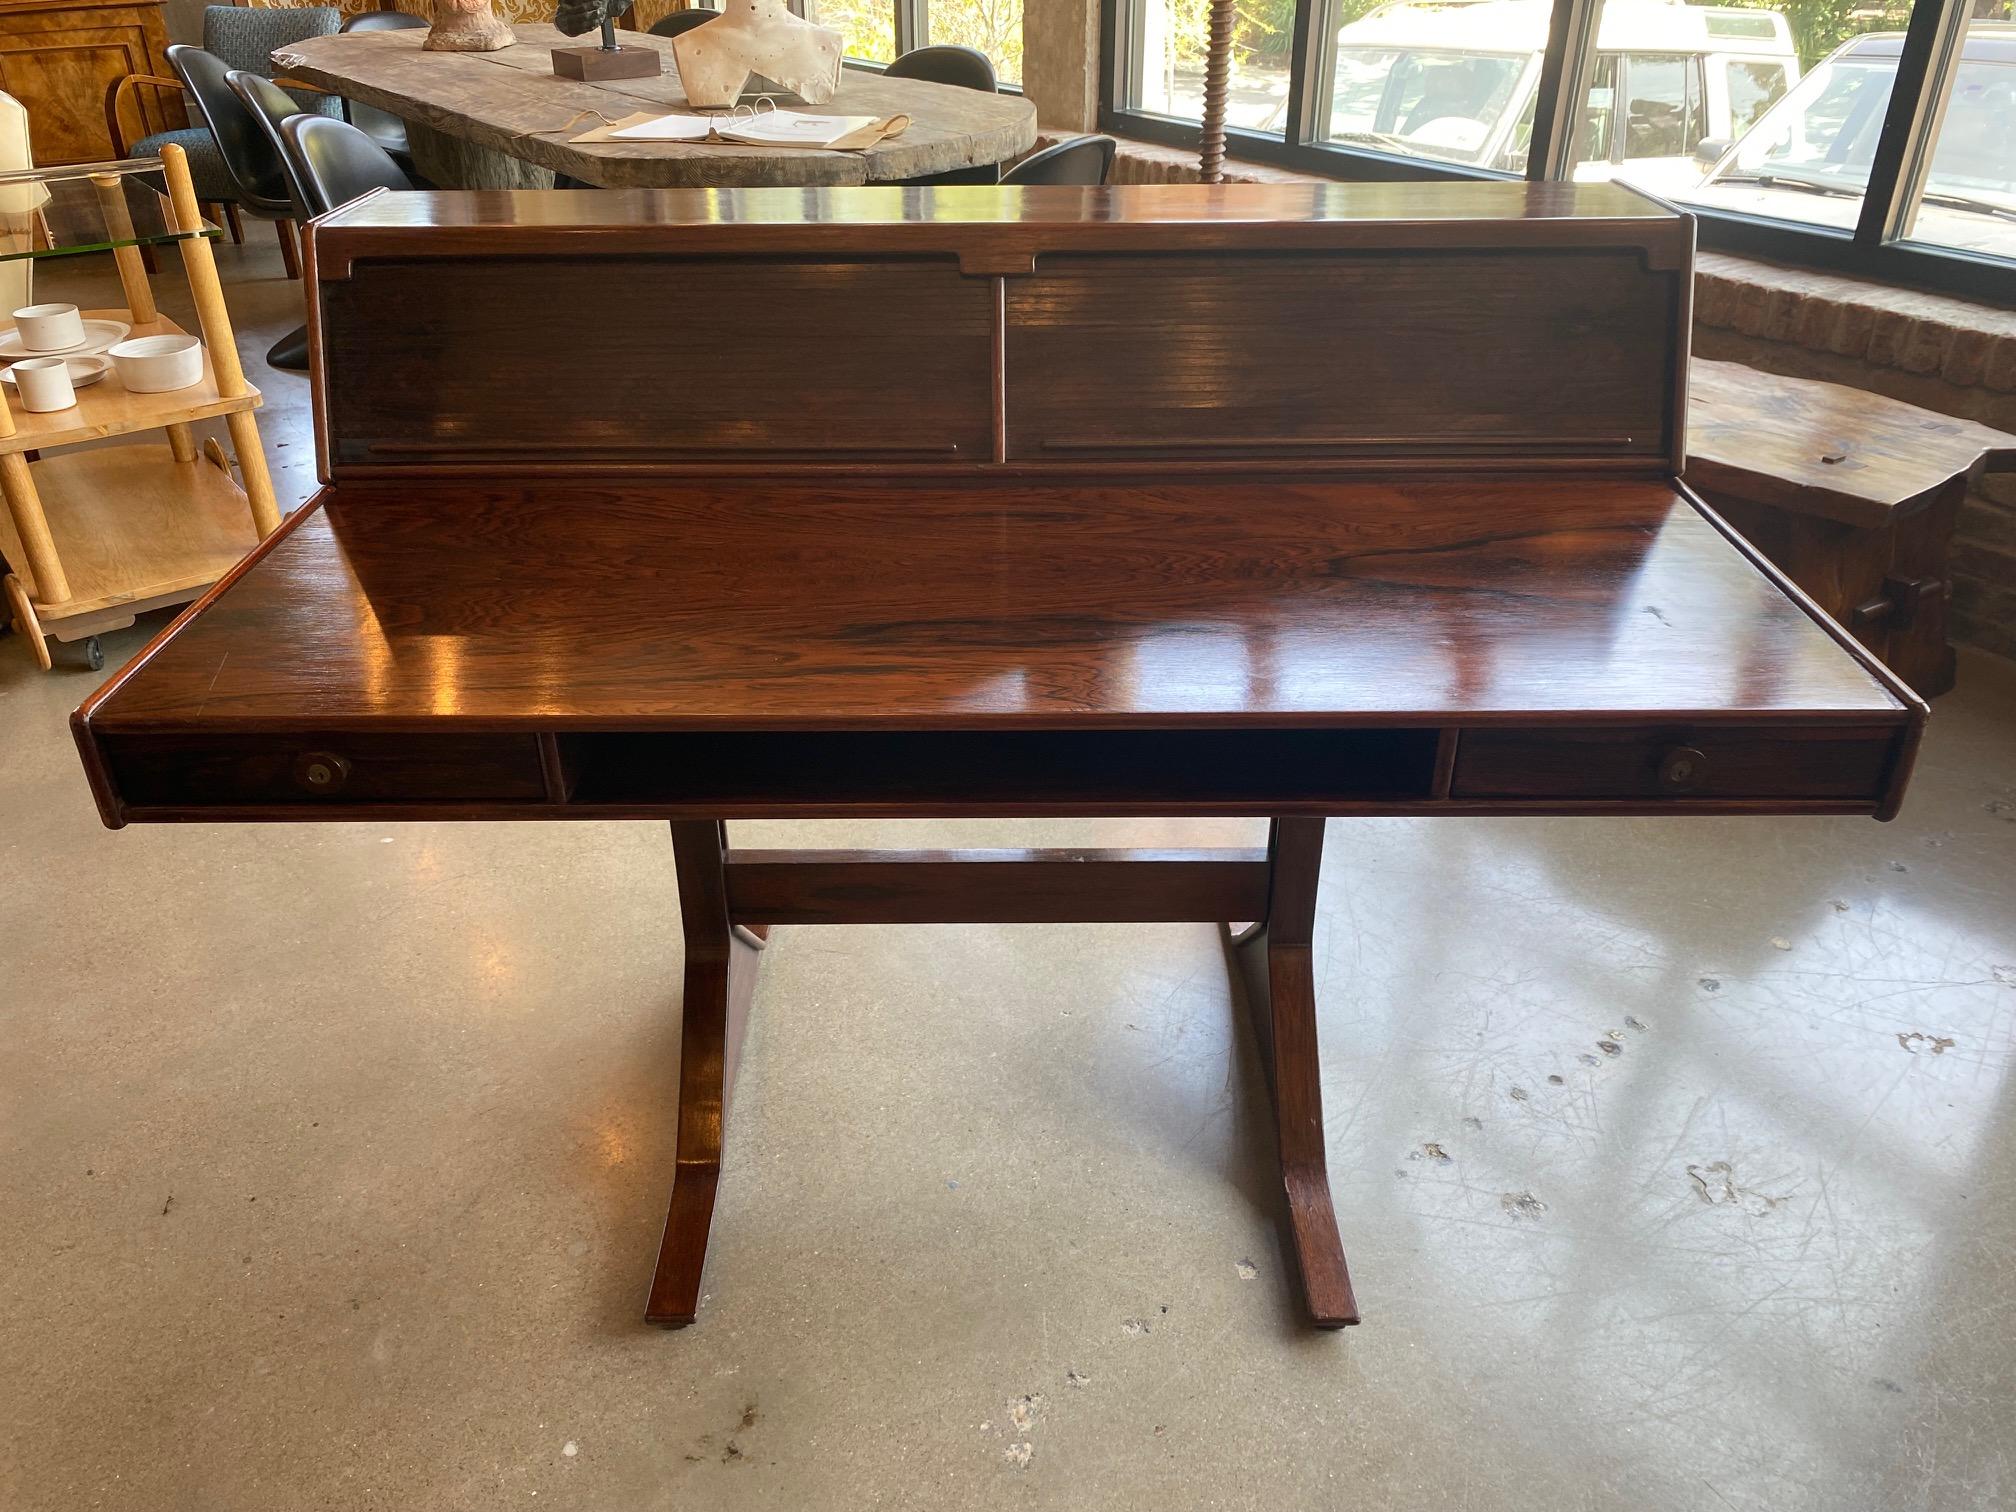 Gianfranco Frattini Schreibtisch aus Palisanderholz Modell 530, entworfen und hergestellt von Bernini, Italien 1957. Dieser Schreibtisch ist aus schön gemasertem Palisander- und Kirschbaumfurnier gefertigt und allseitig bearbeitet.  Oben auf der